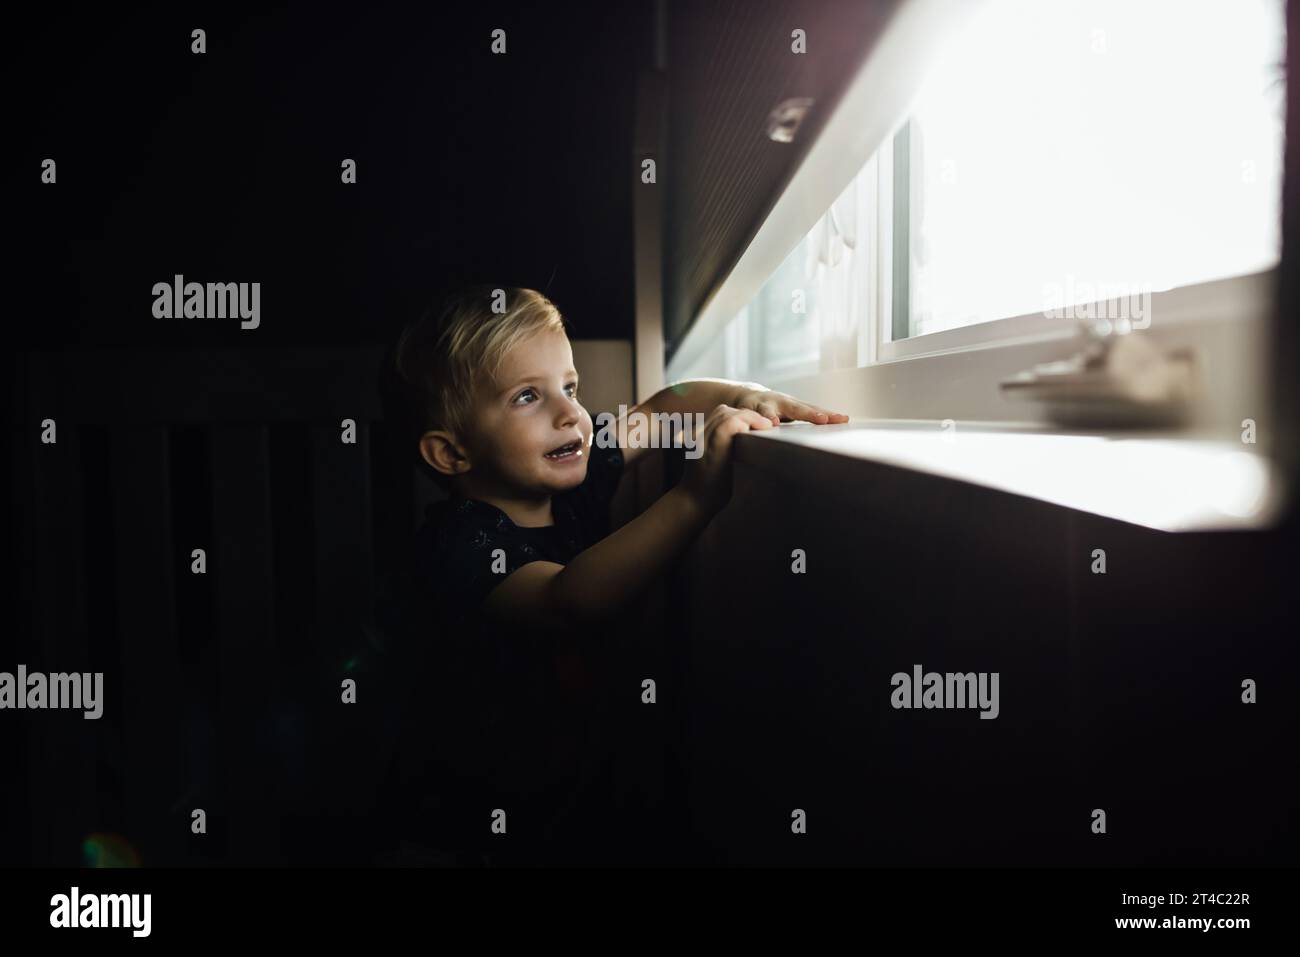 Der kleine blonde Junge schaut durch hellen Wind aus dem dunklen Raum Stockfoto